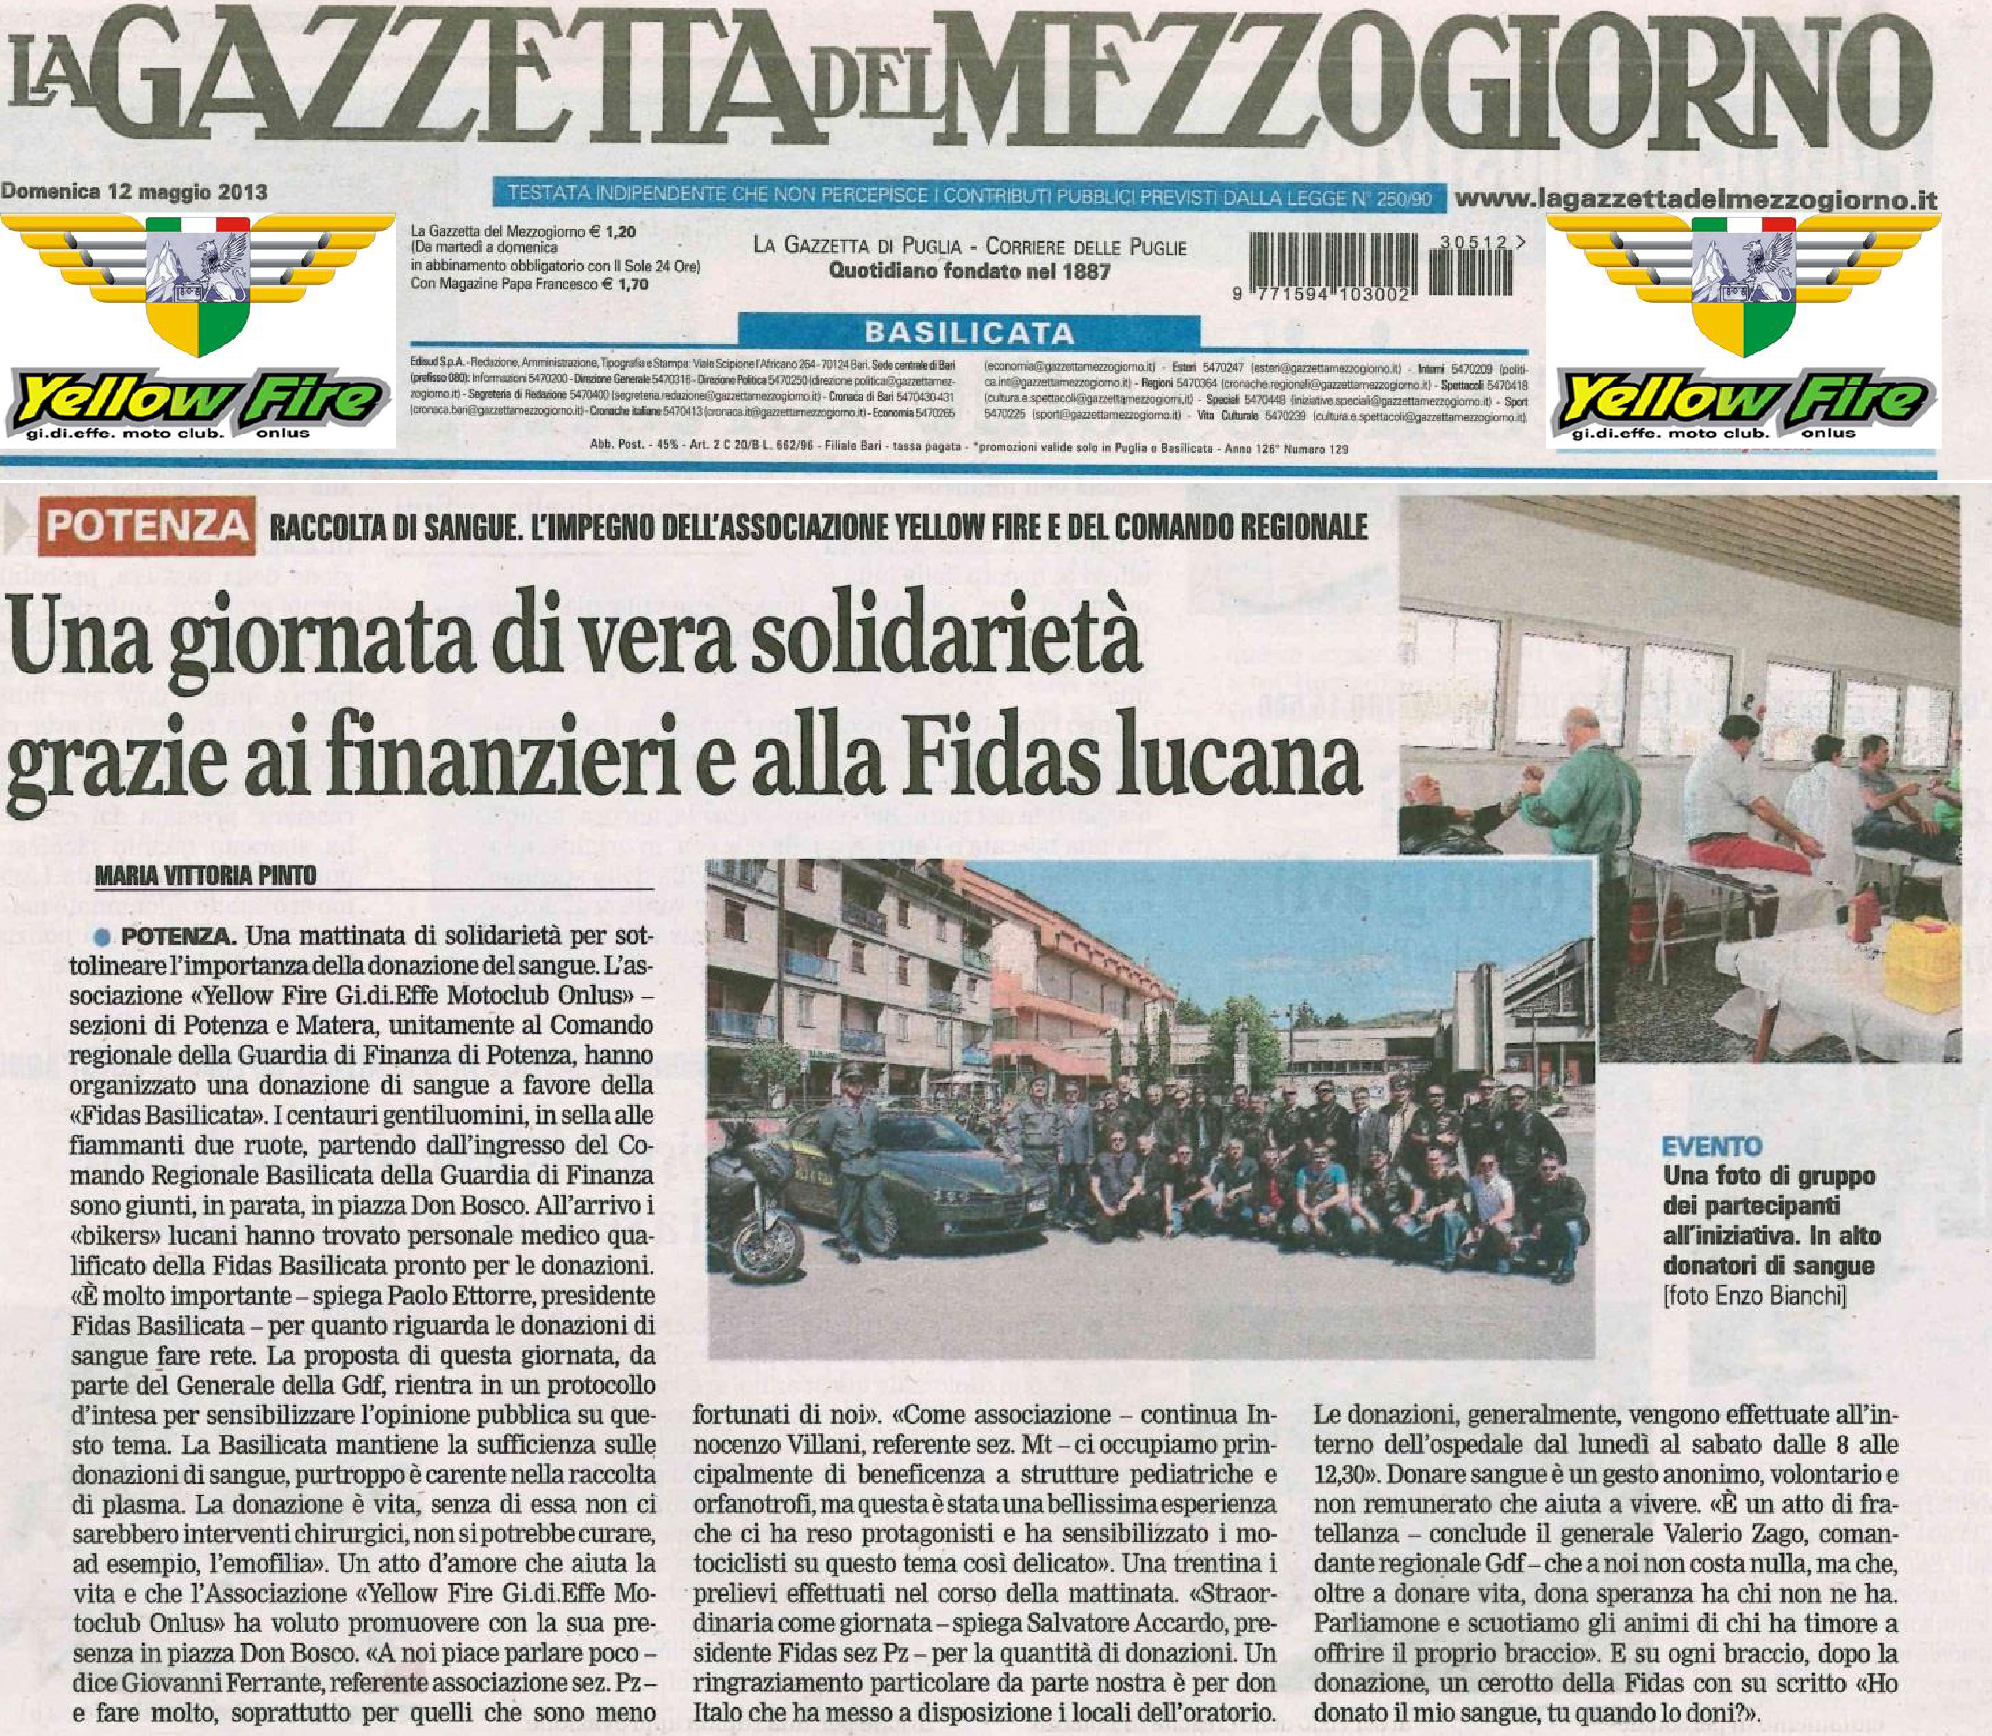 Articolo Gazzetta page1 image1